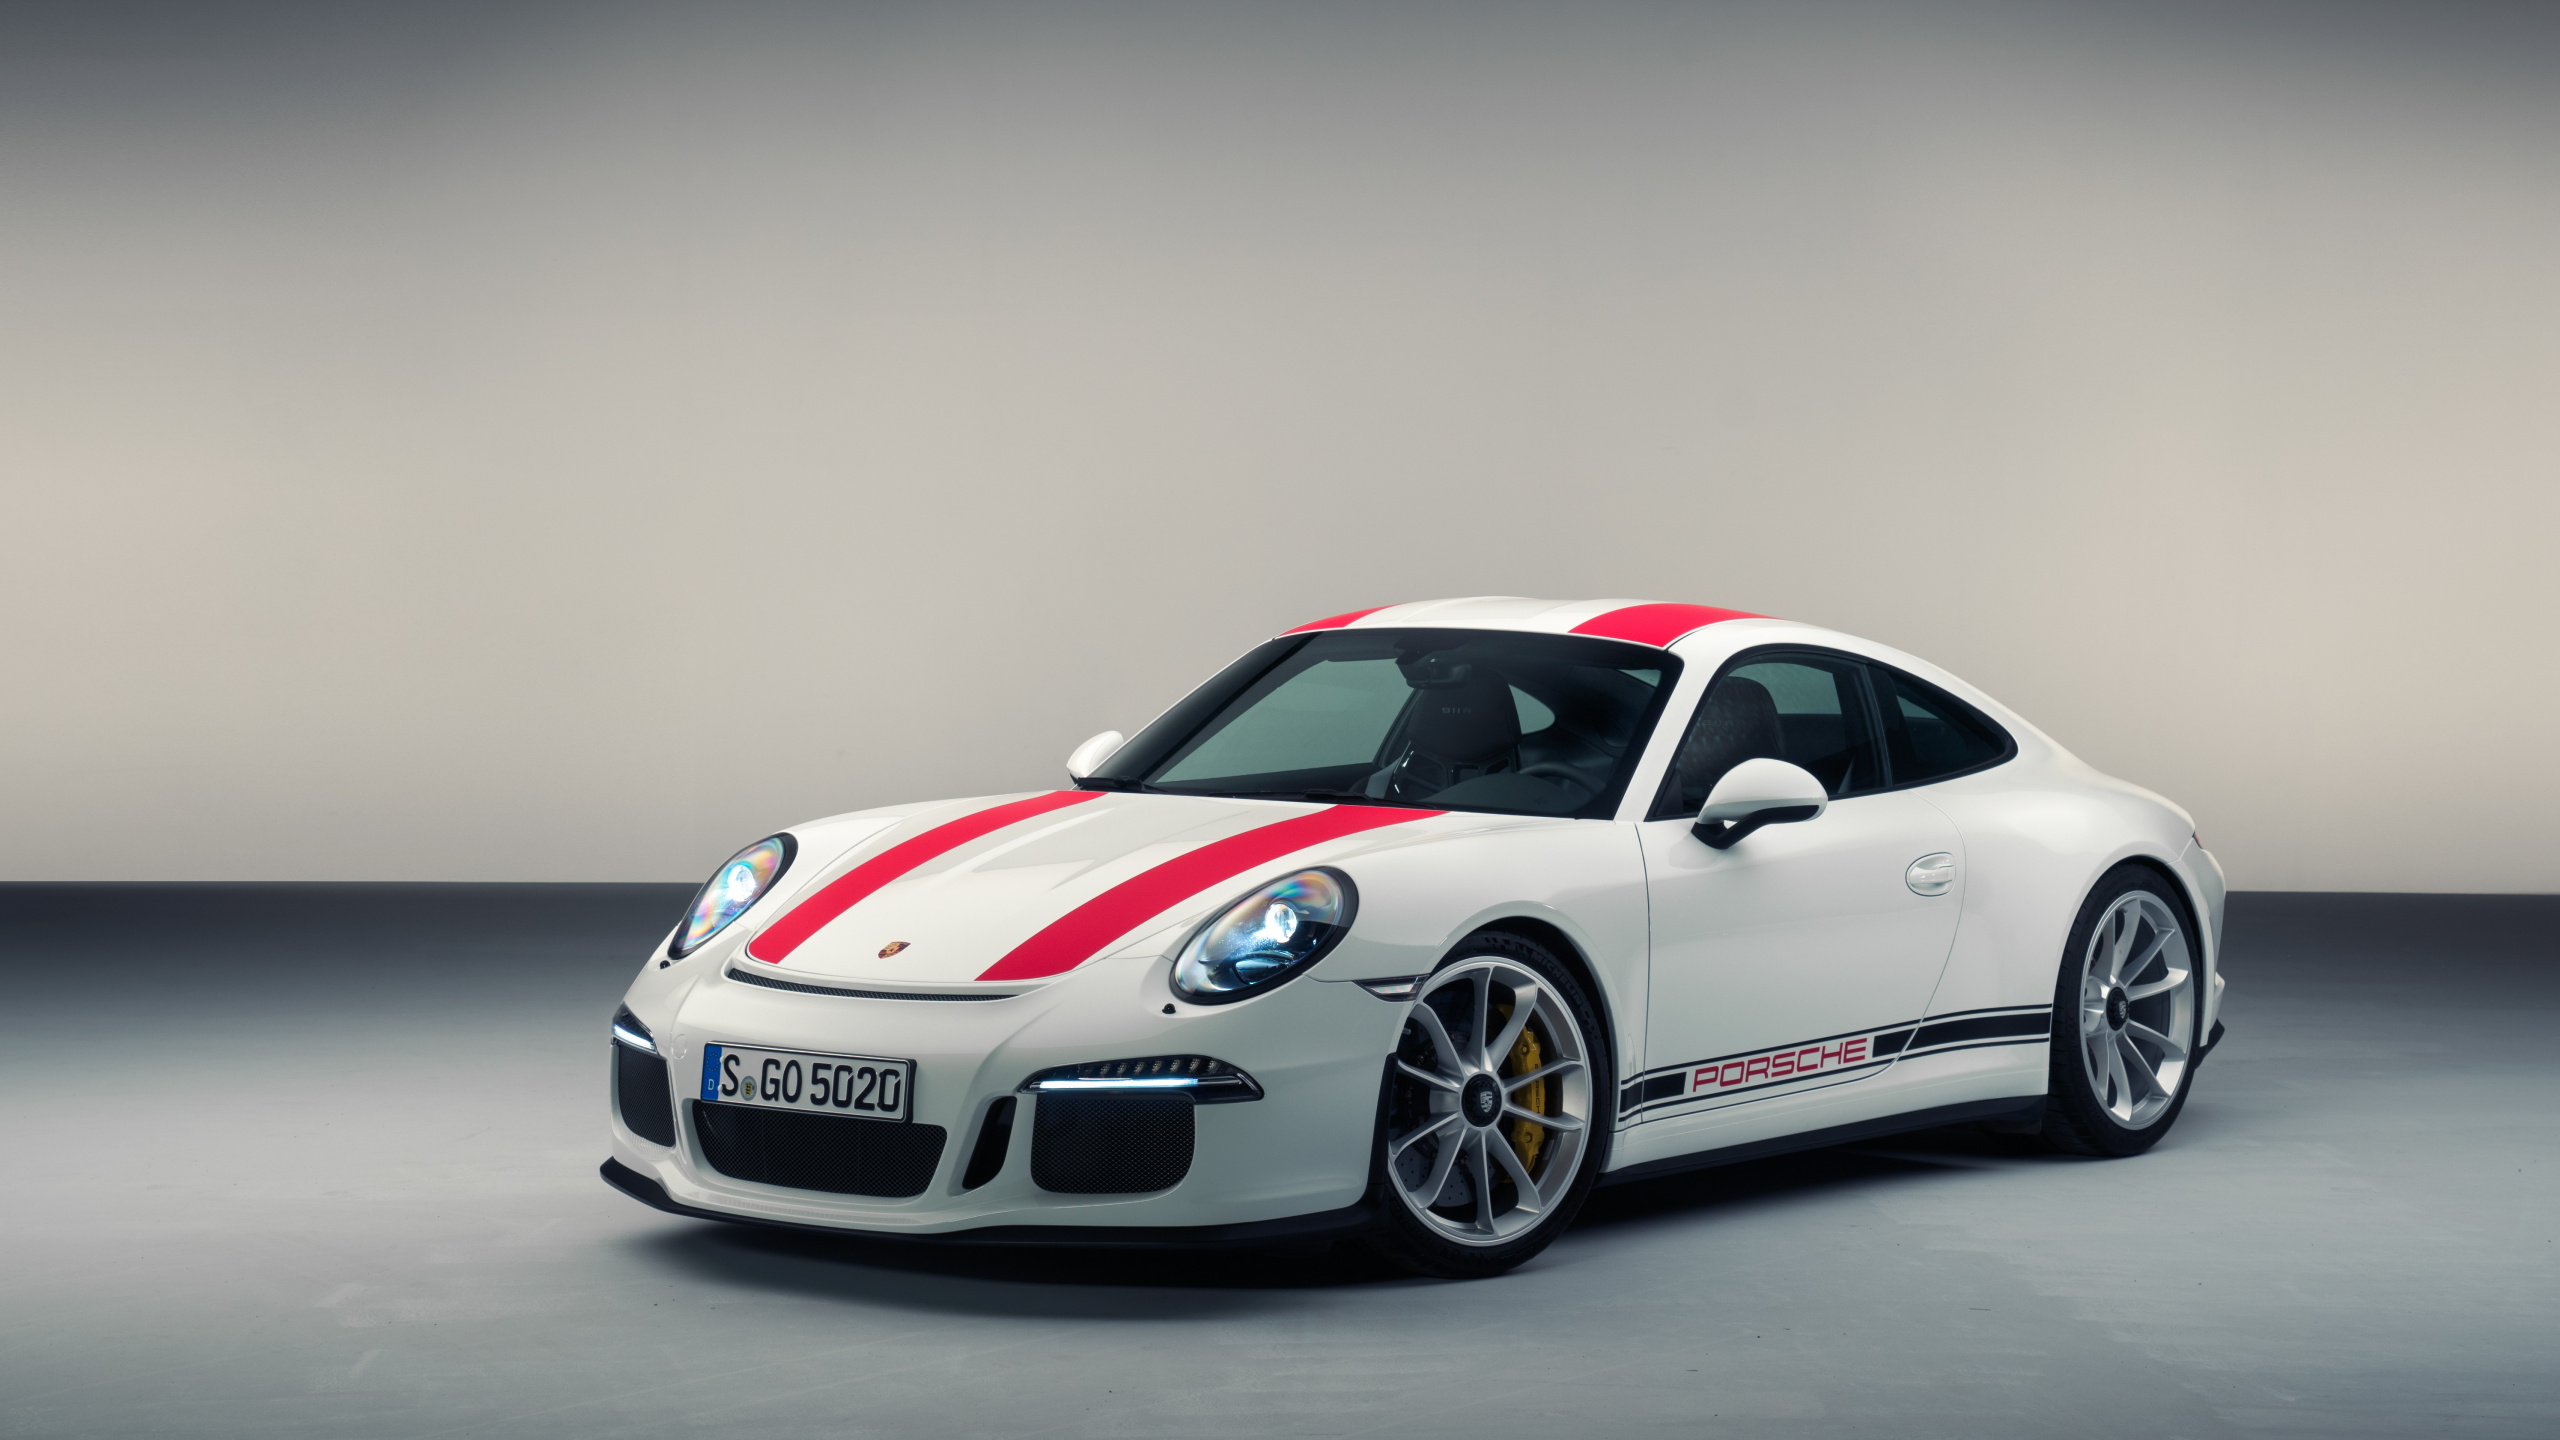 Porsche 911 Blanco y Rojo. Wallpaper in 2560x1440 Resolution